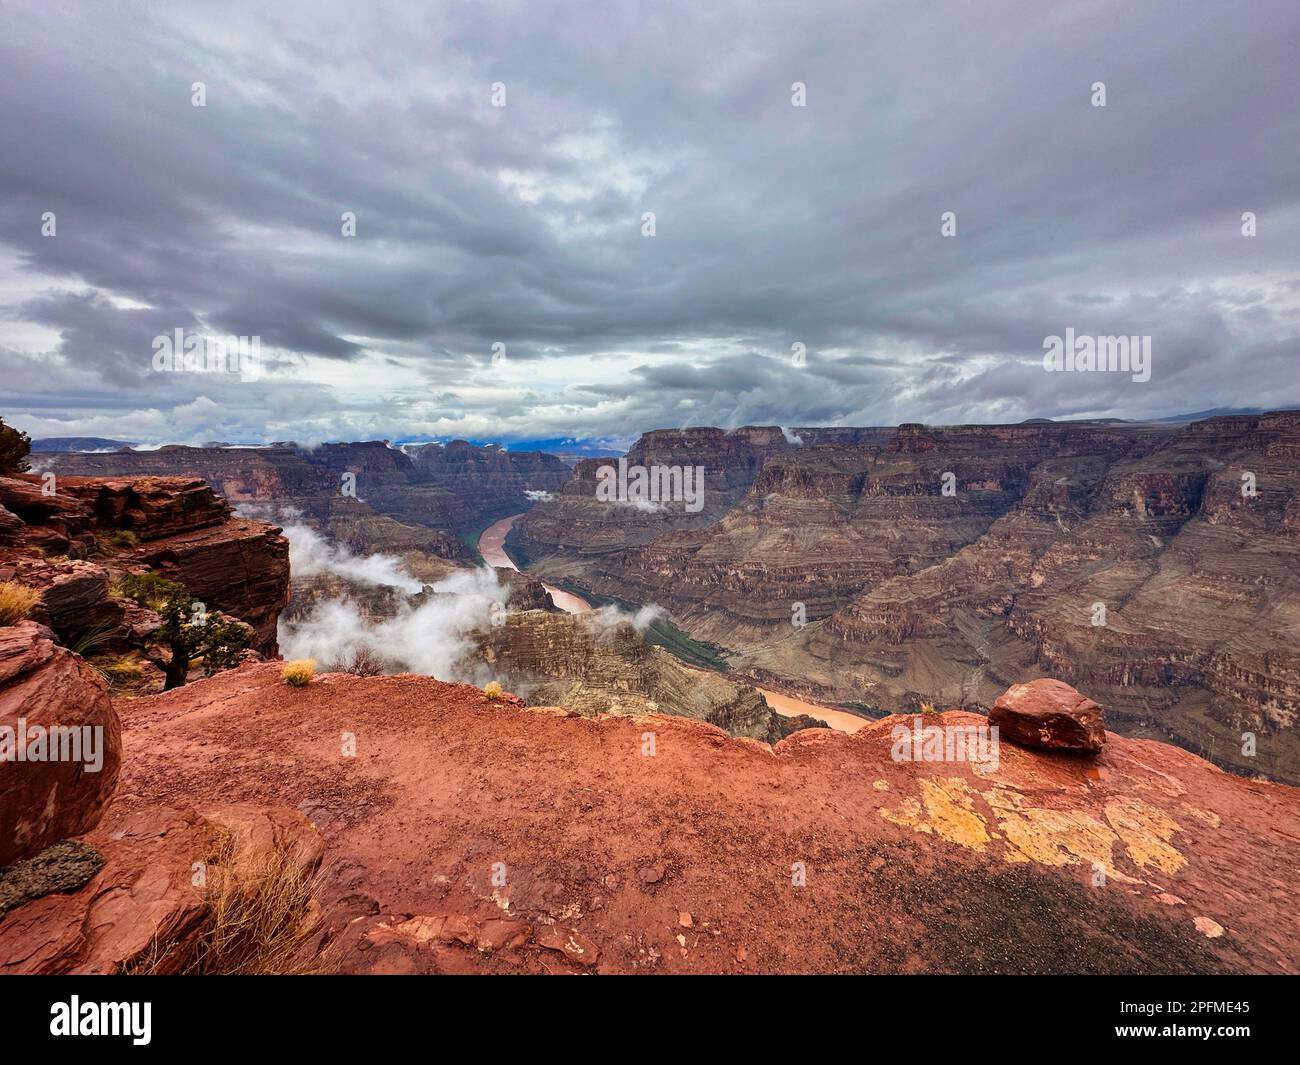 Dans les nuages, sur le plateau ouest du Grand Canyon. Guano point plein de nuages lors d'une journée froide humide de brouillard à l'une des sept merveilles du monde. Banque D'Images